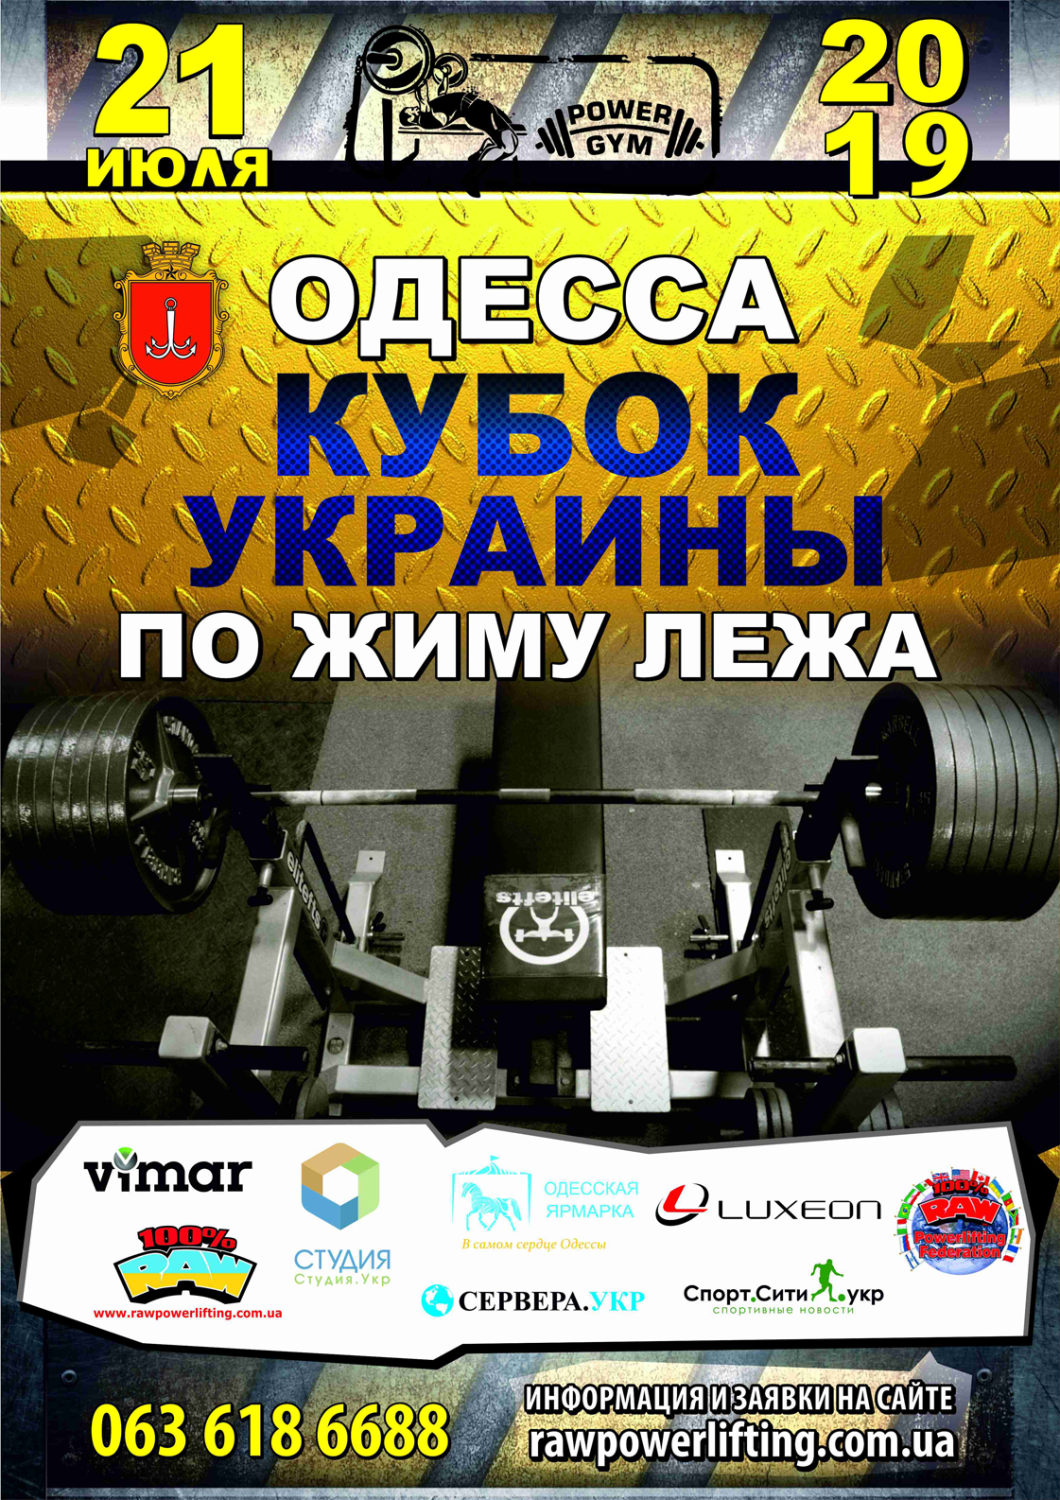 Кубок Украины по жиму лежа Одесса 2019